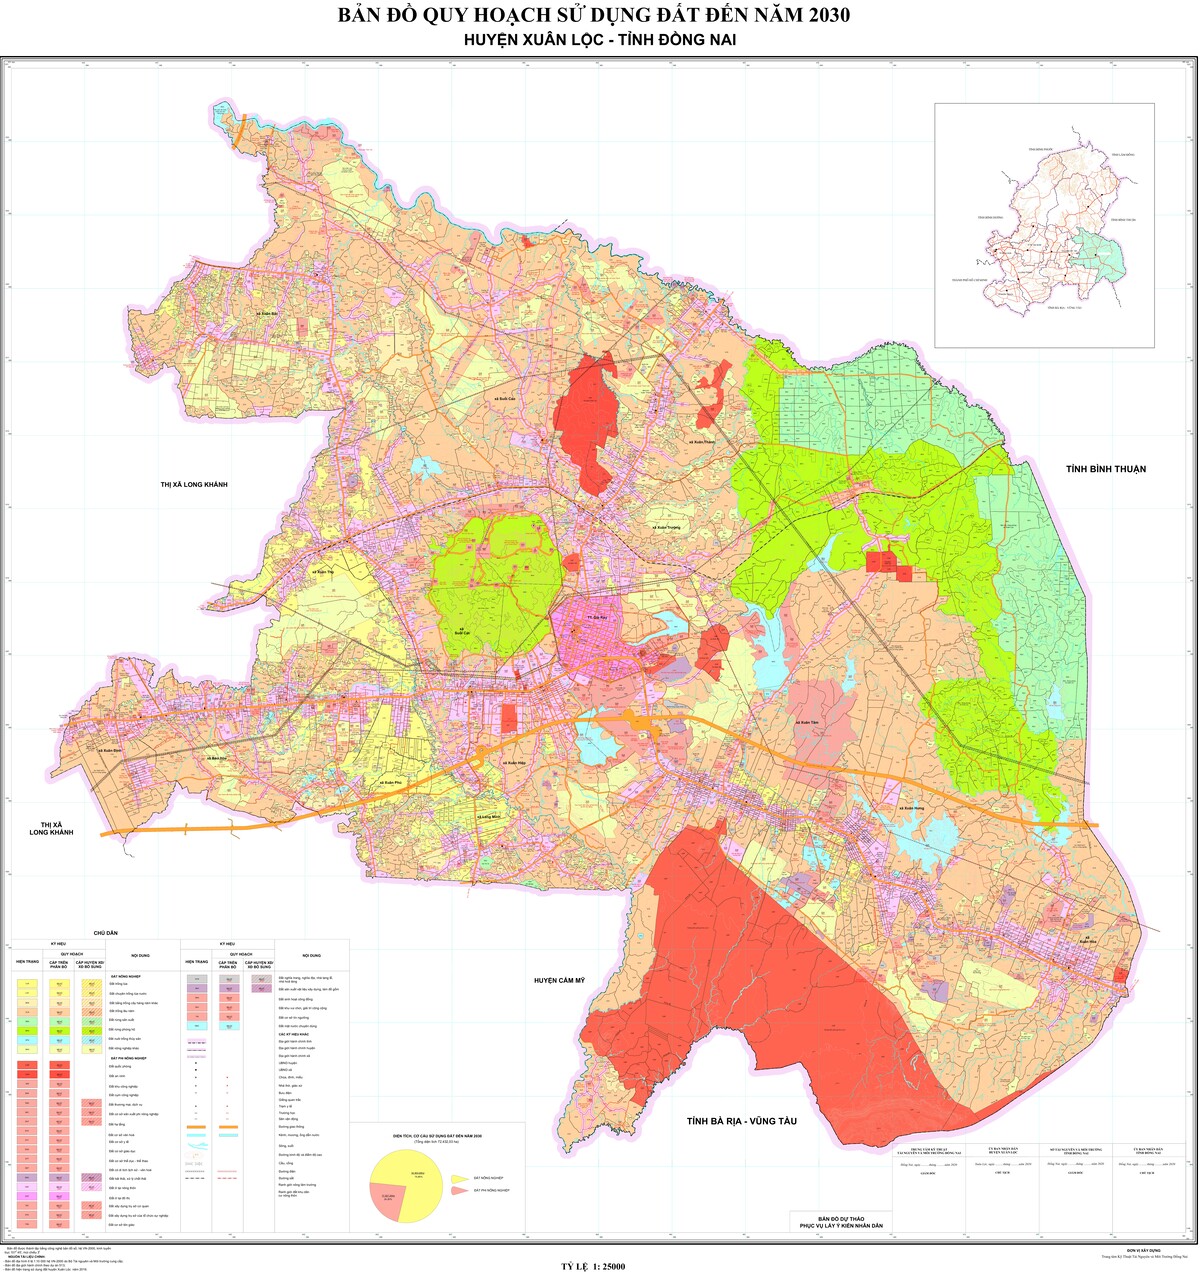 Bản đồ quy hoạch huyện Xuân Lộc, tỉnh Đồng Nai đến năm 2030